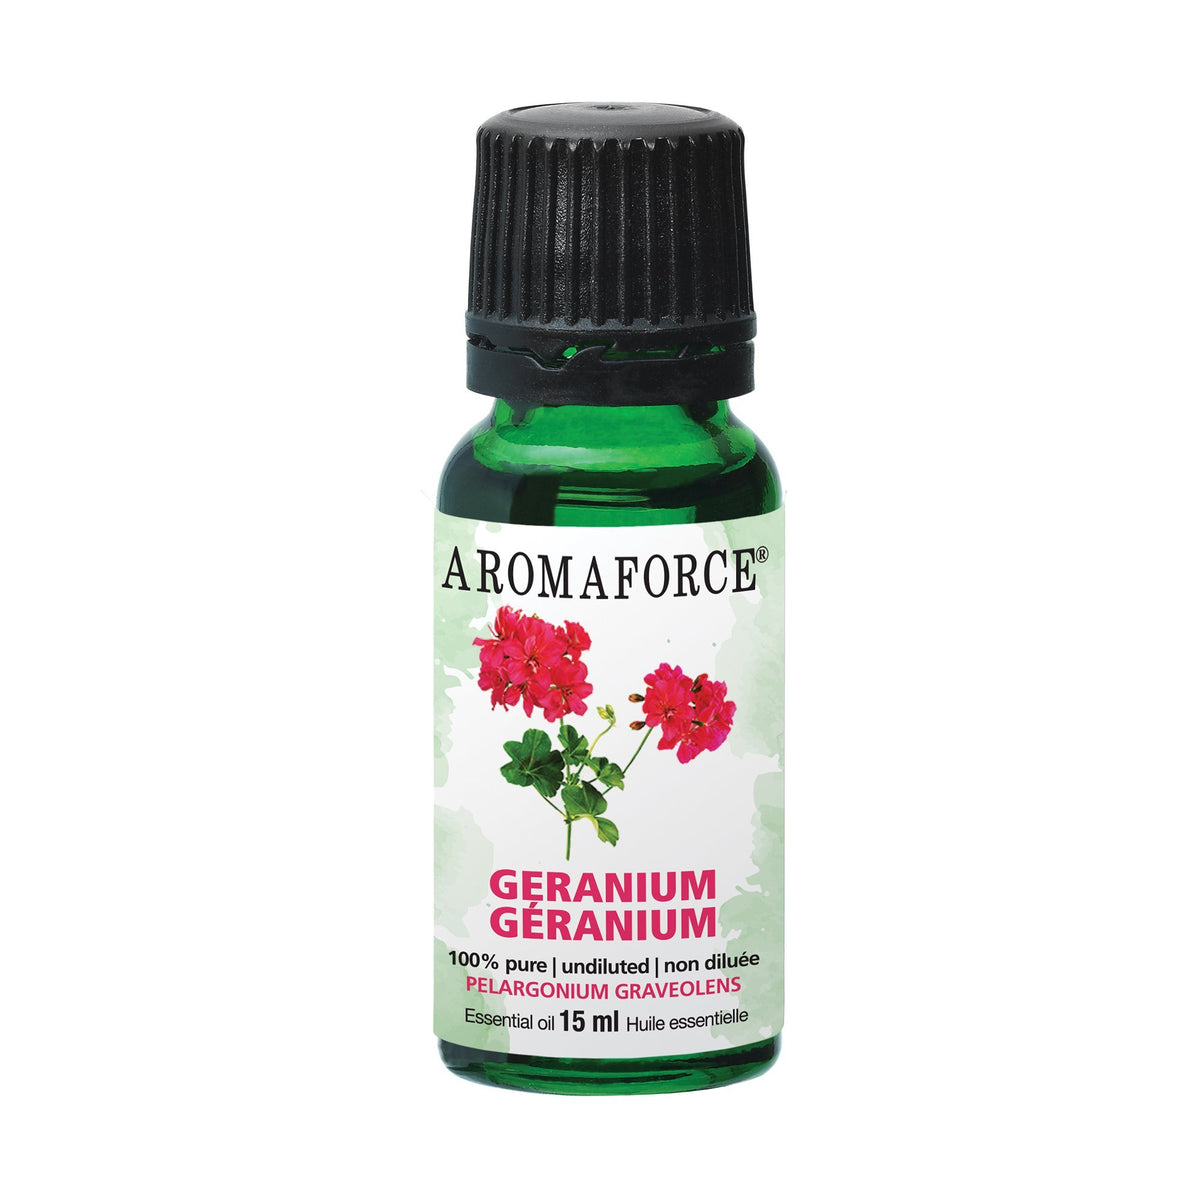 Aromaforce Geranium Essential Oil 15mL - A.Vogel Canada